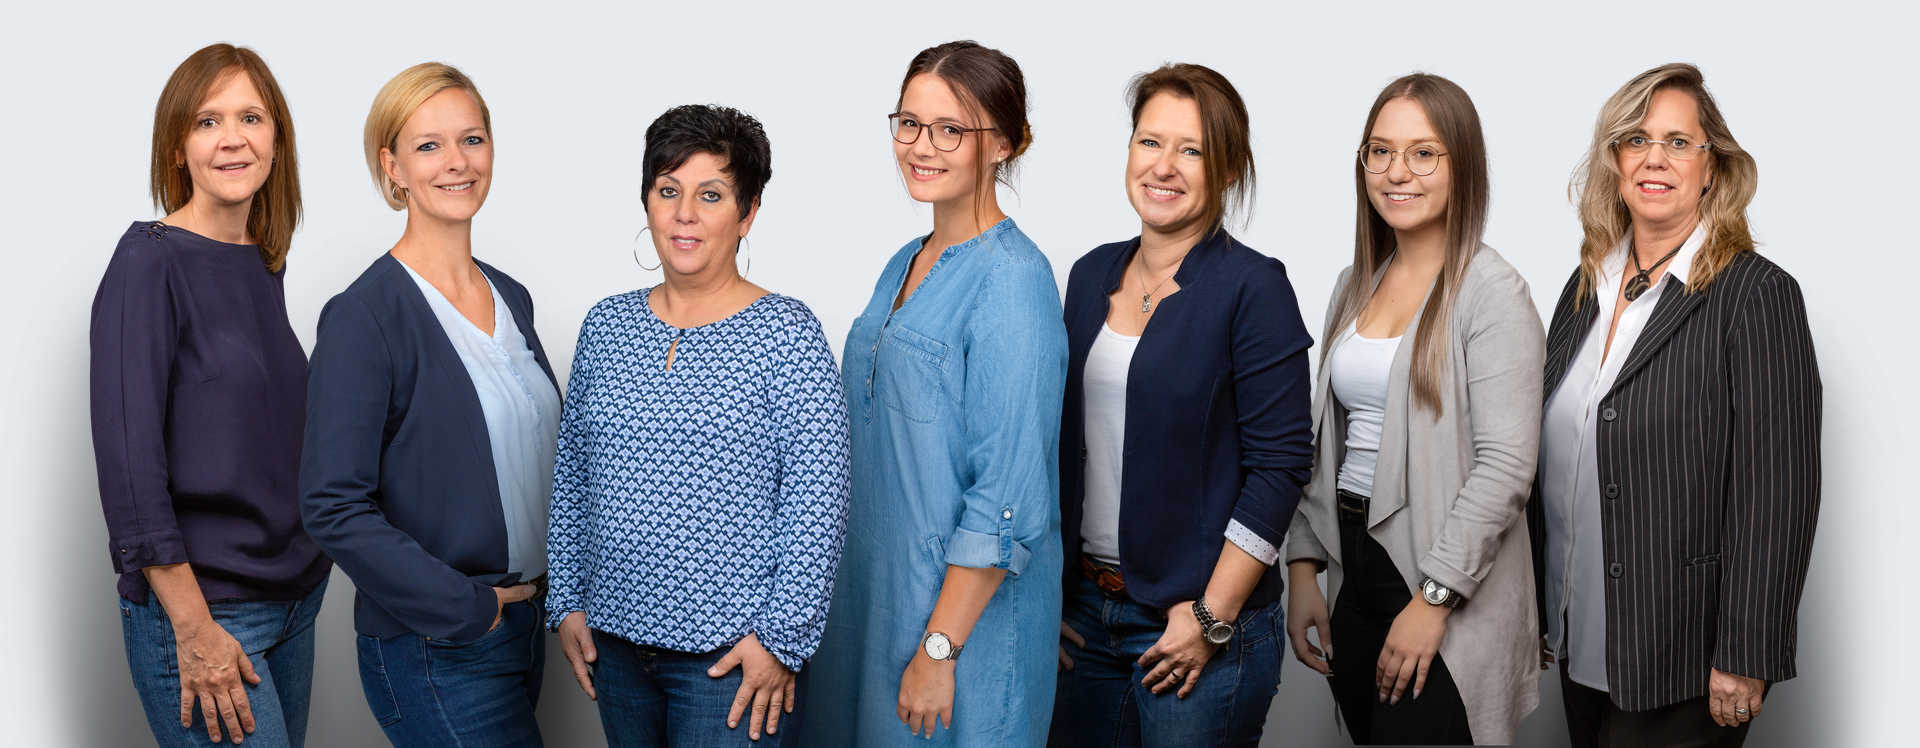 Gruppenbild des Büroteams (6 Frauen)